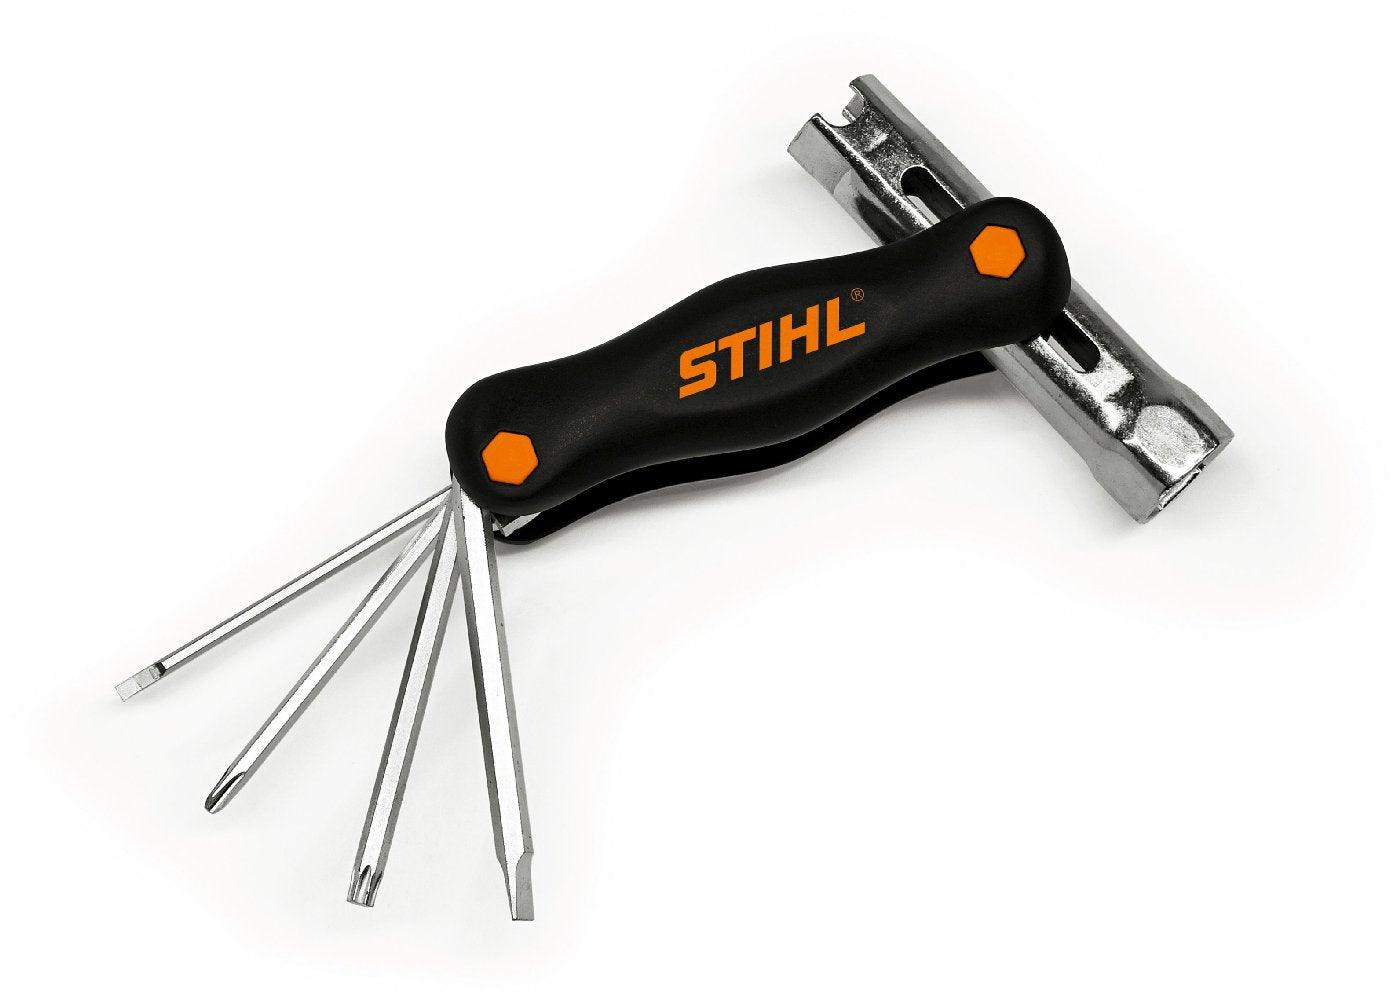 STIHL Multifunktionswerkzeug mit Schlüsselweite 19 - 16 - MotorLand.at